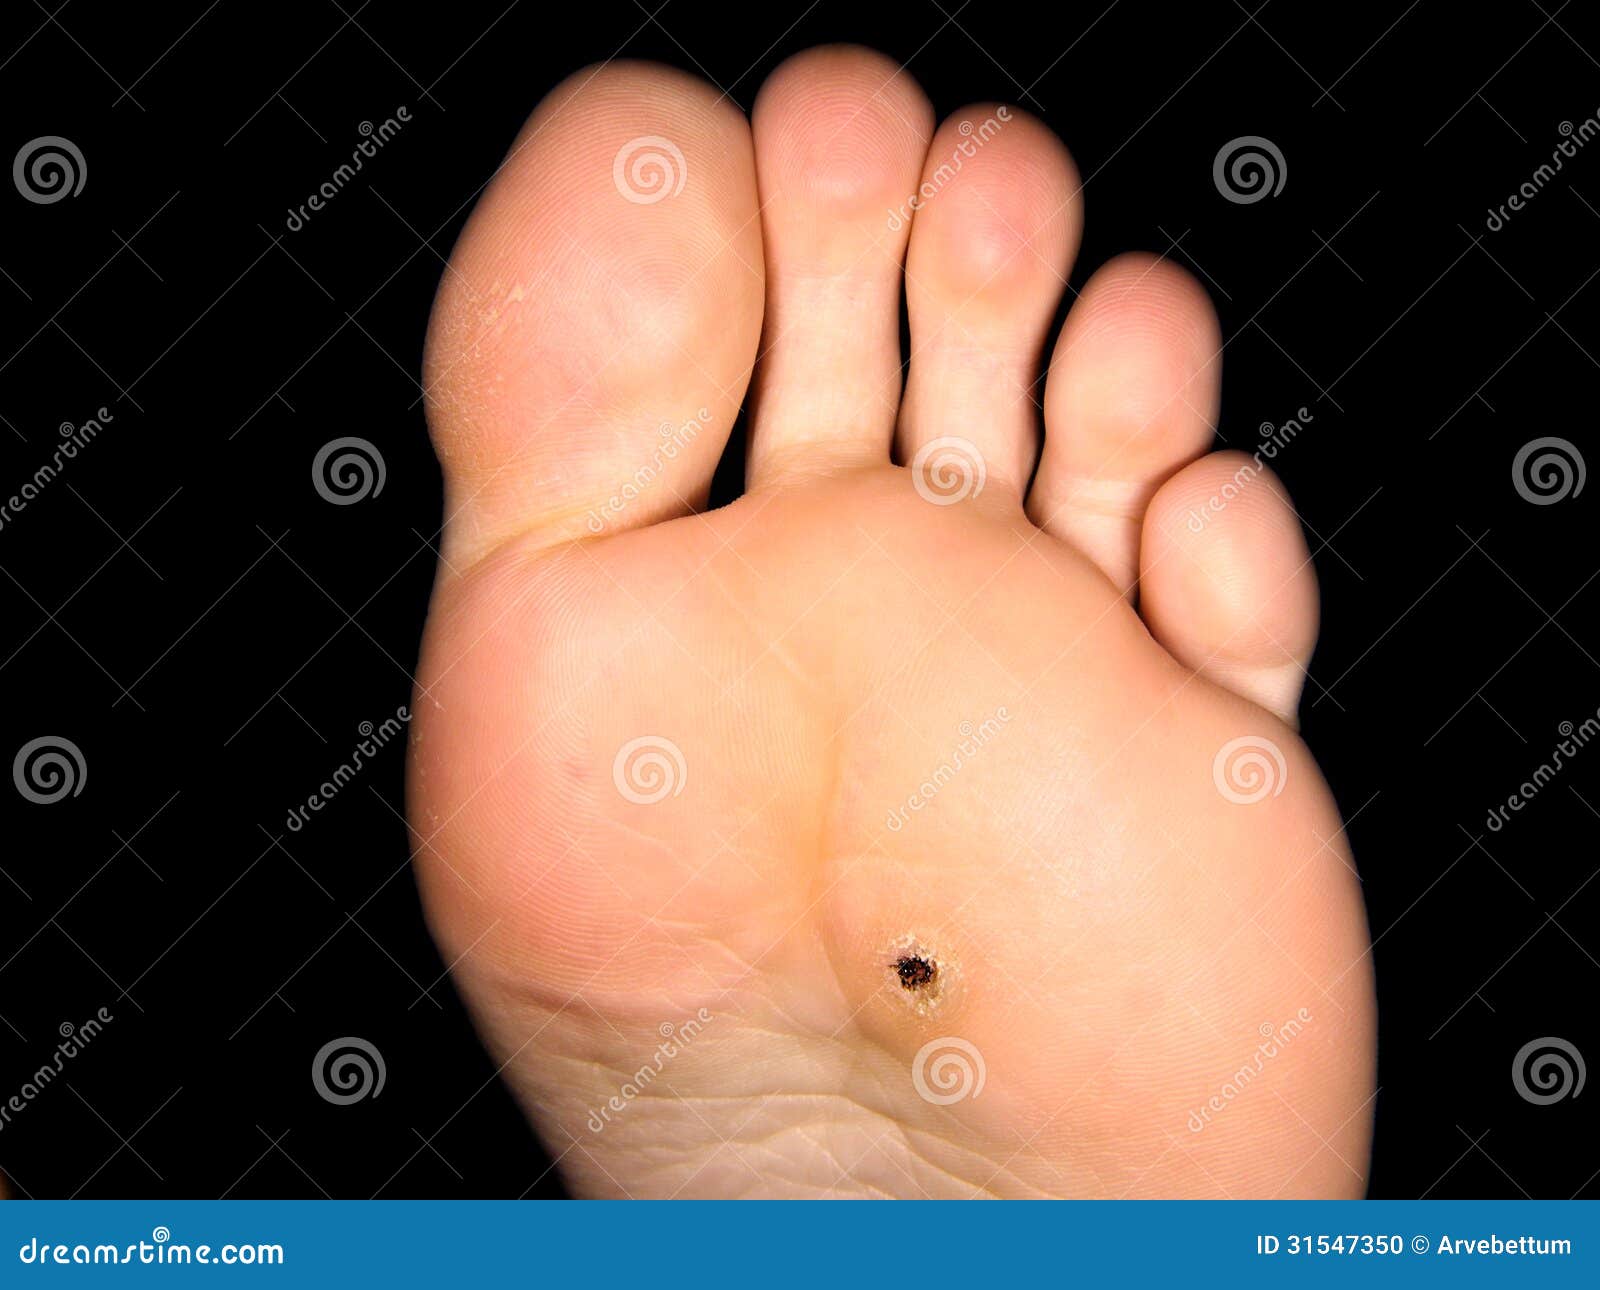 foot callus file